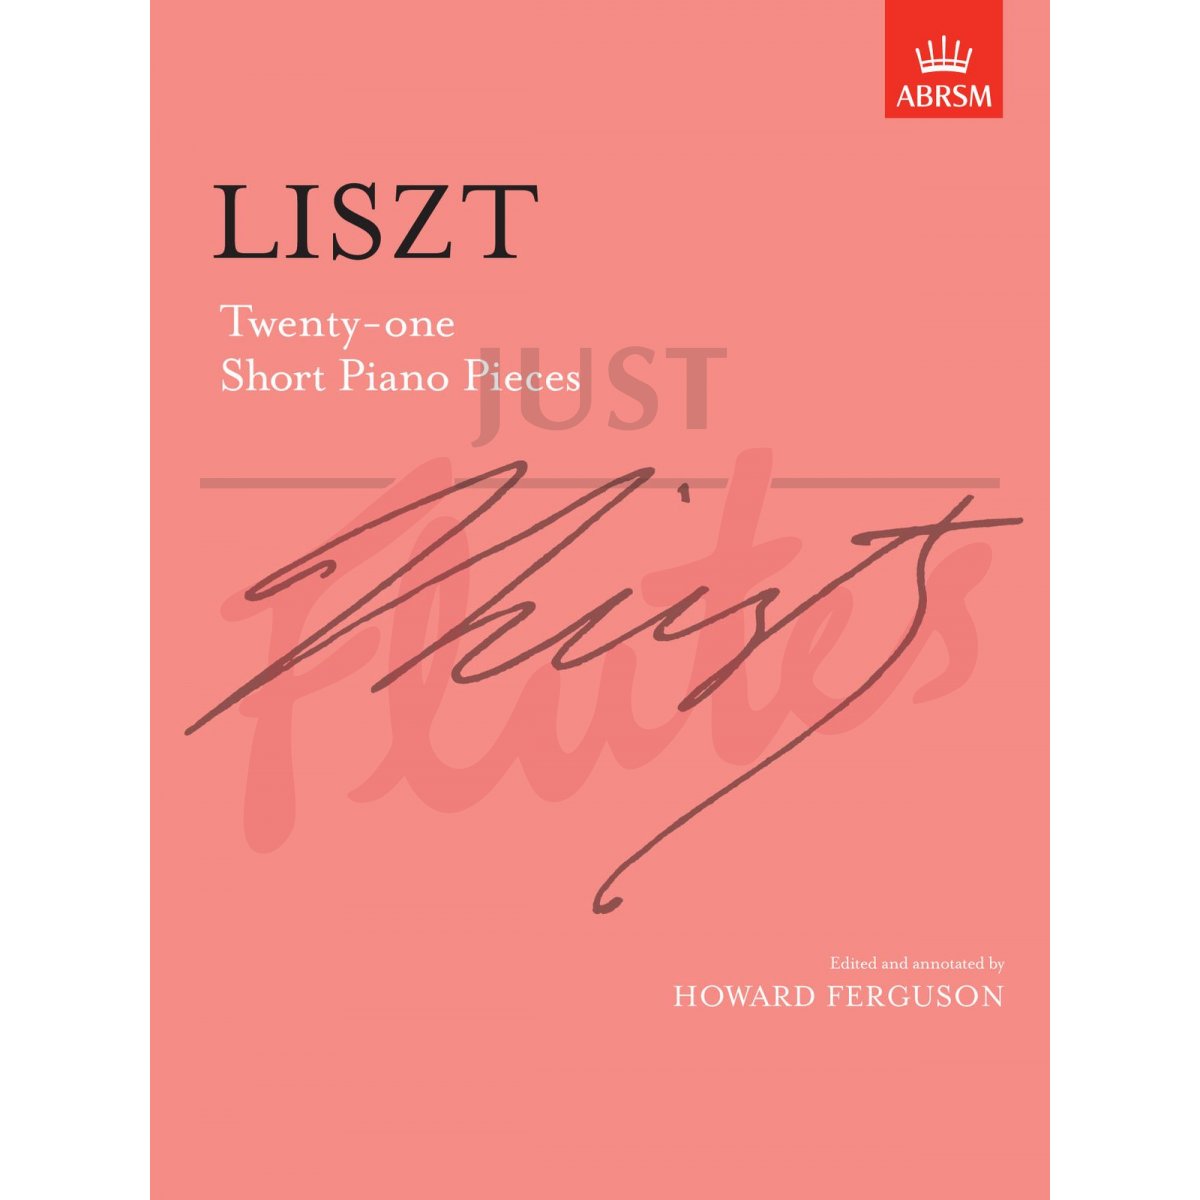 Twenty-One Short Piano Pieces